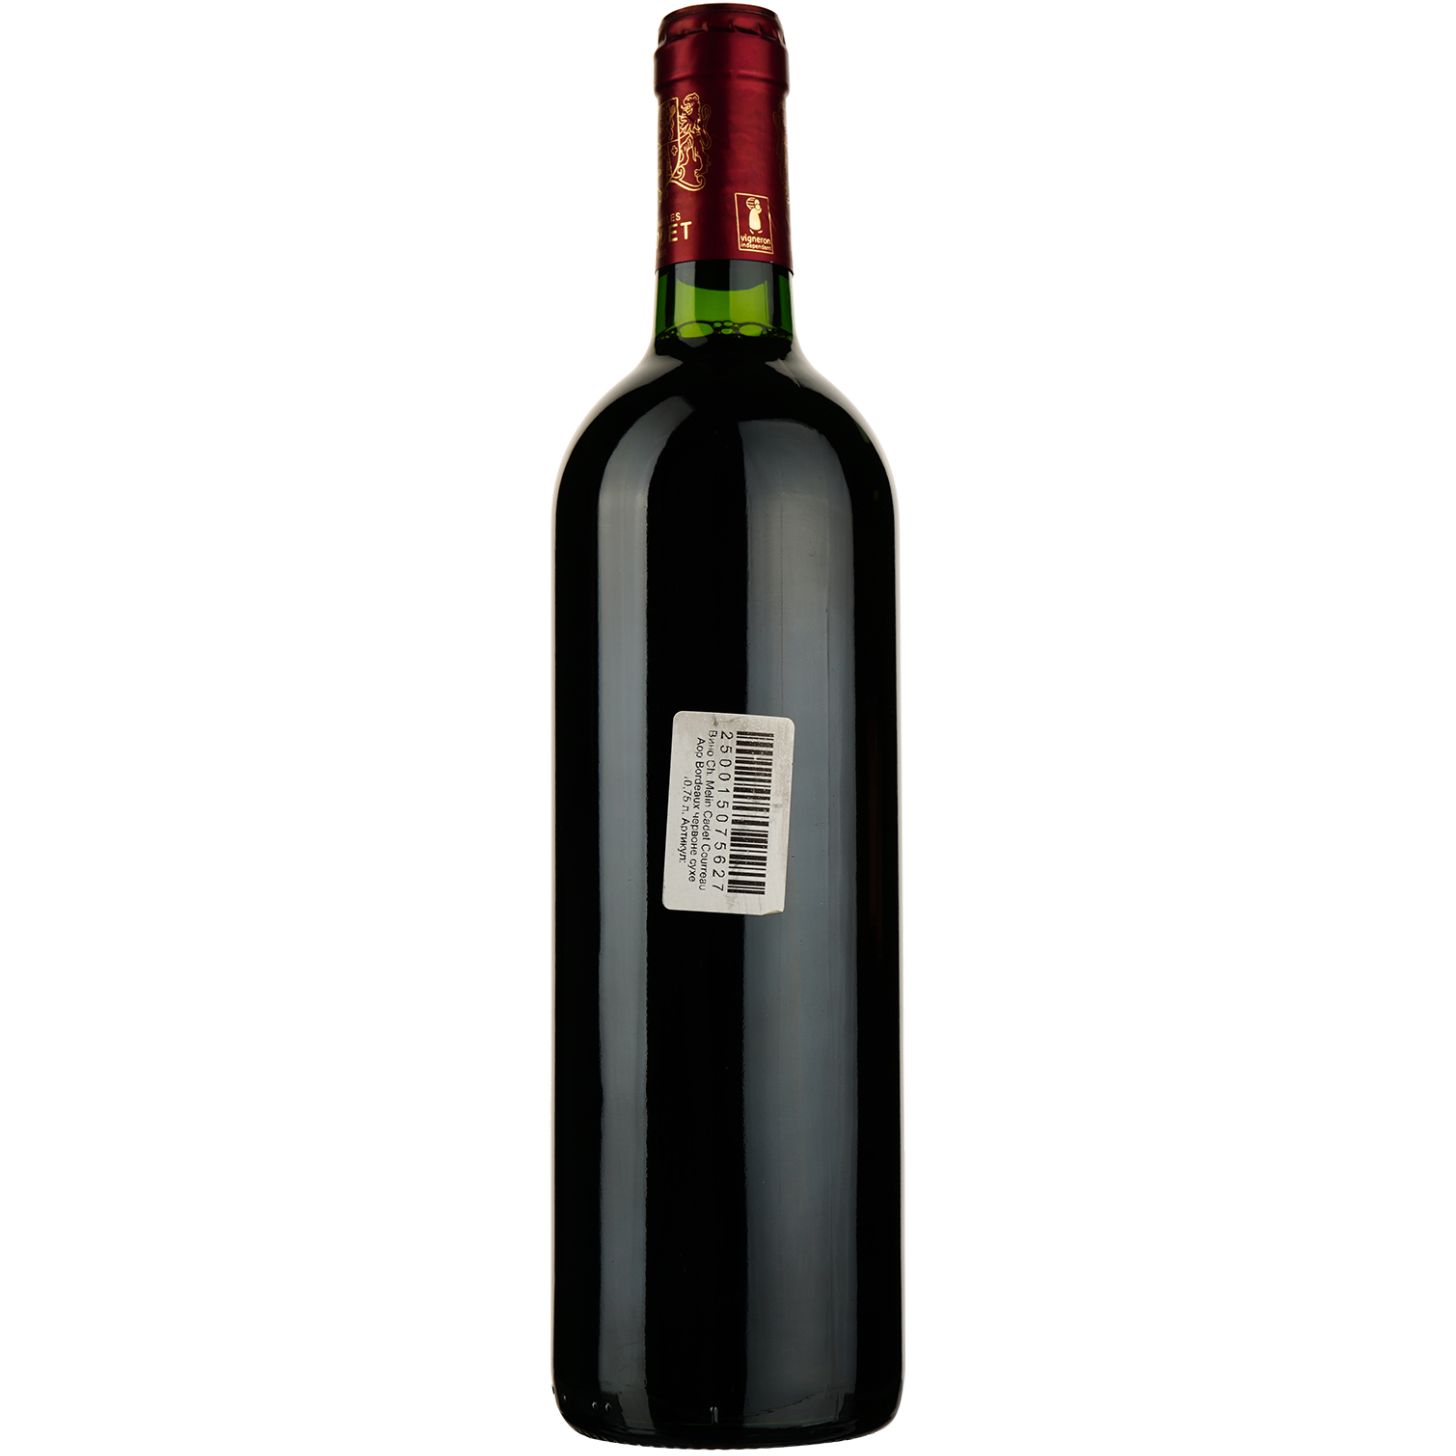 Вино Chаteau Melin Cadet Courreau AOP Bordeaux 2018, червоне, сухе, 0,75 л - фото 2